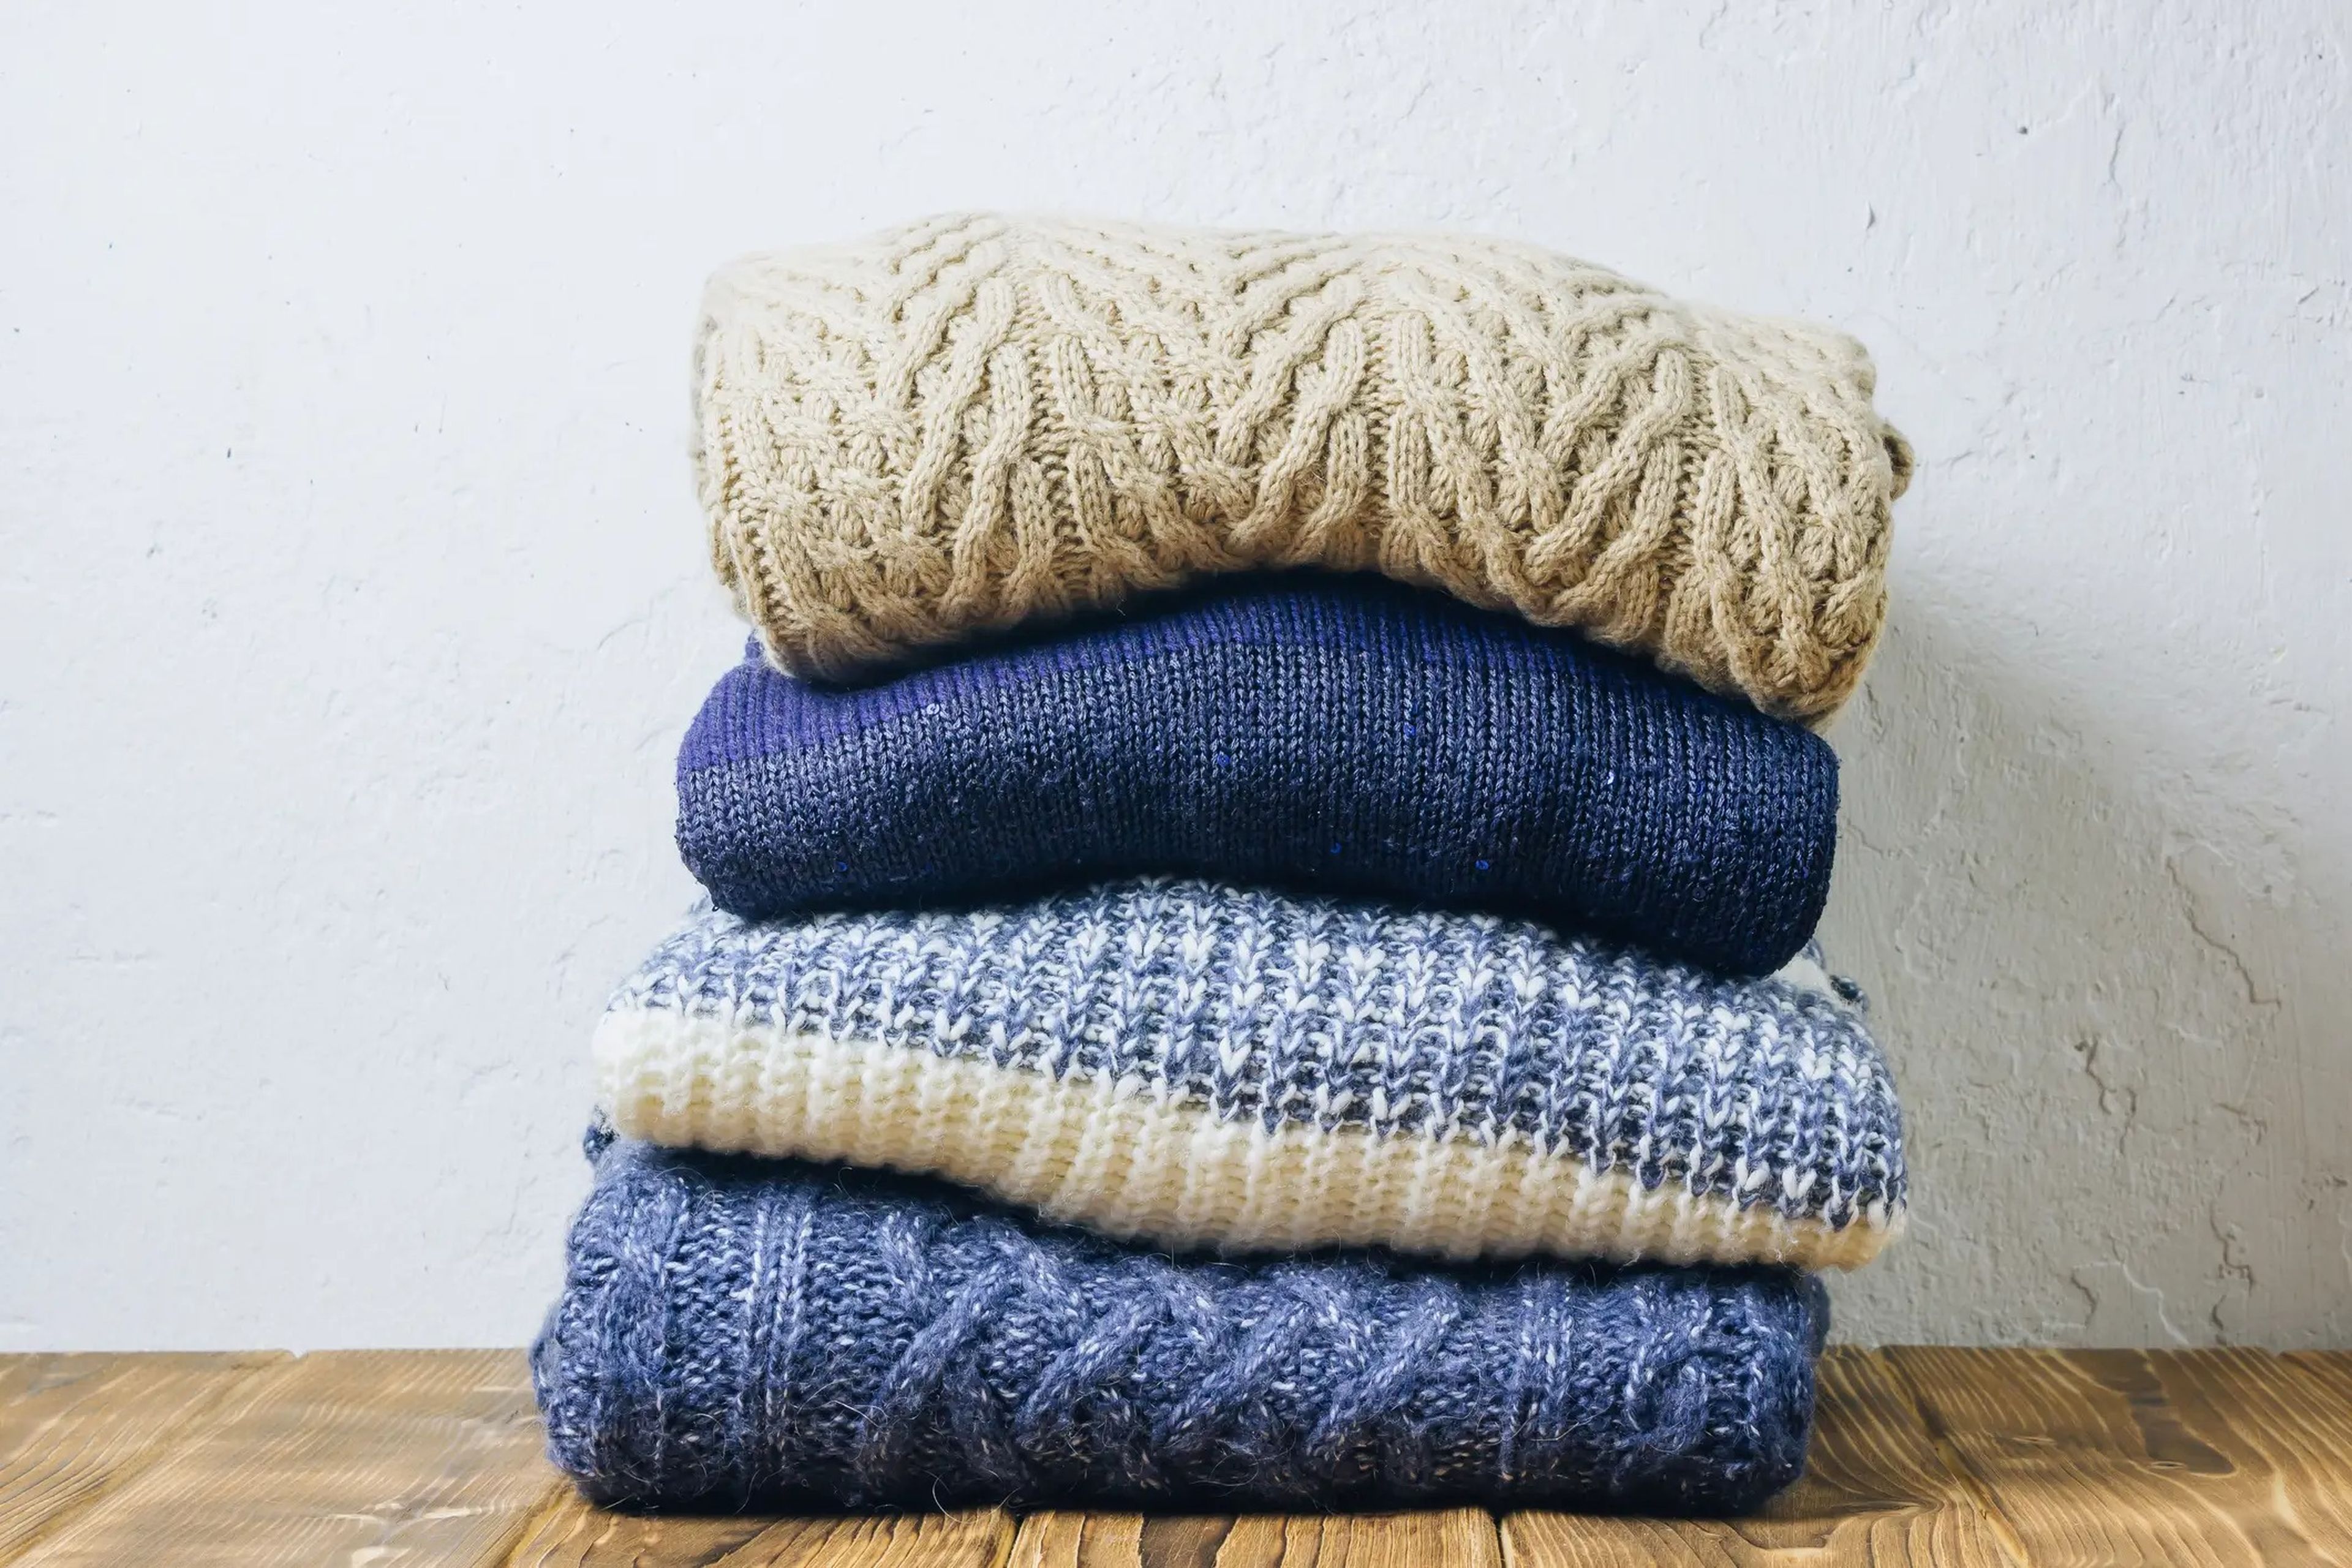 Dobla los jerséis y apílalos antes de guardarlos, y usa perchas resistentes para guardar abrigos de invierno.